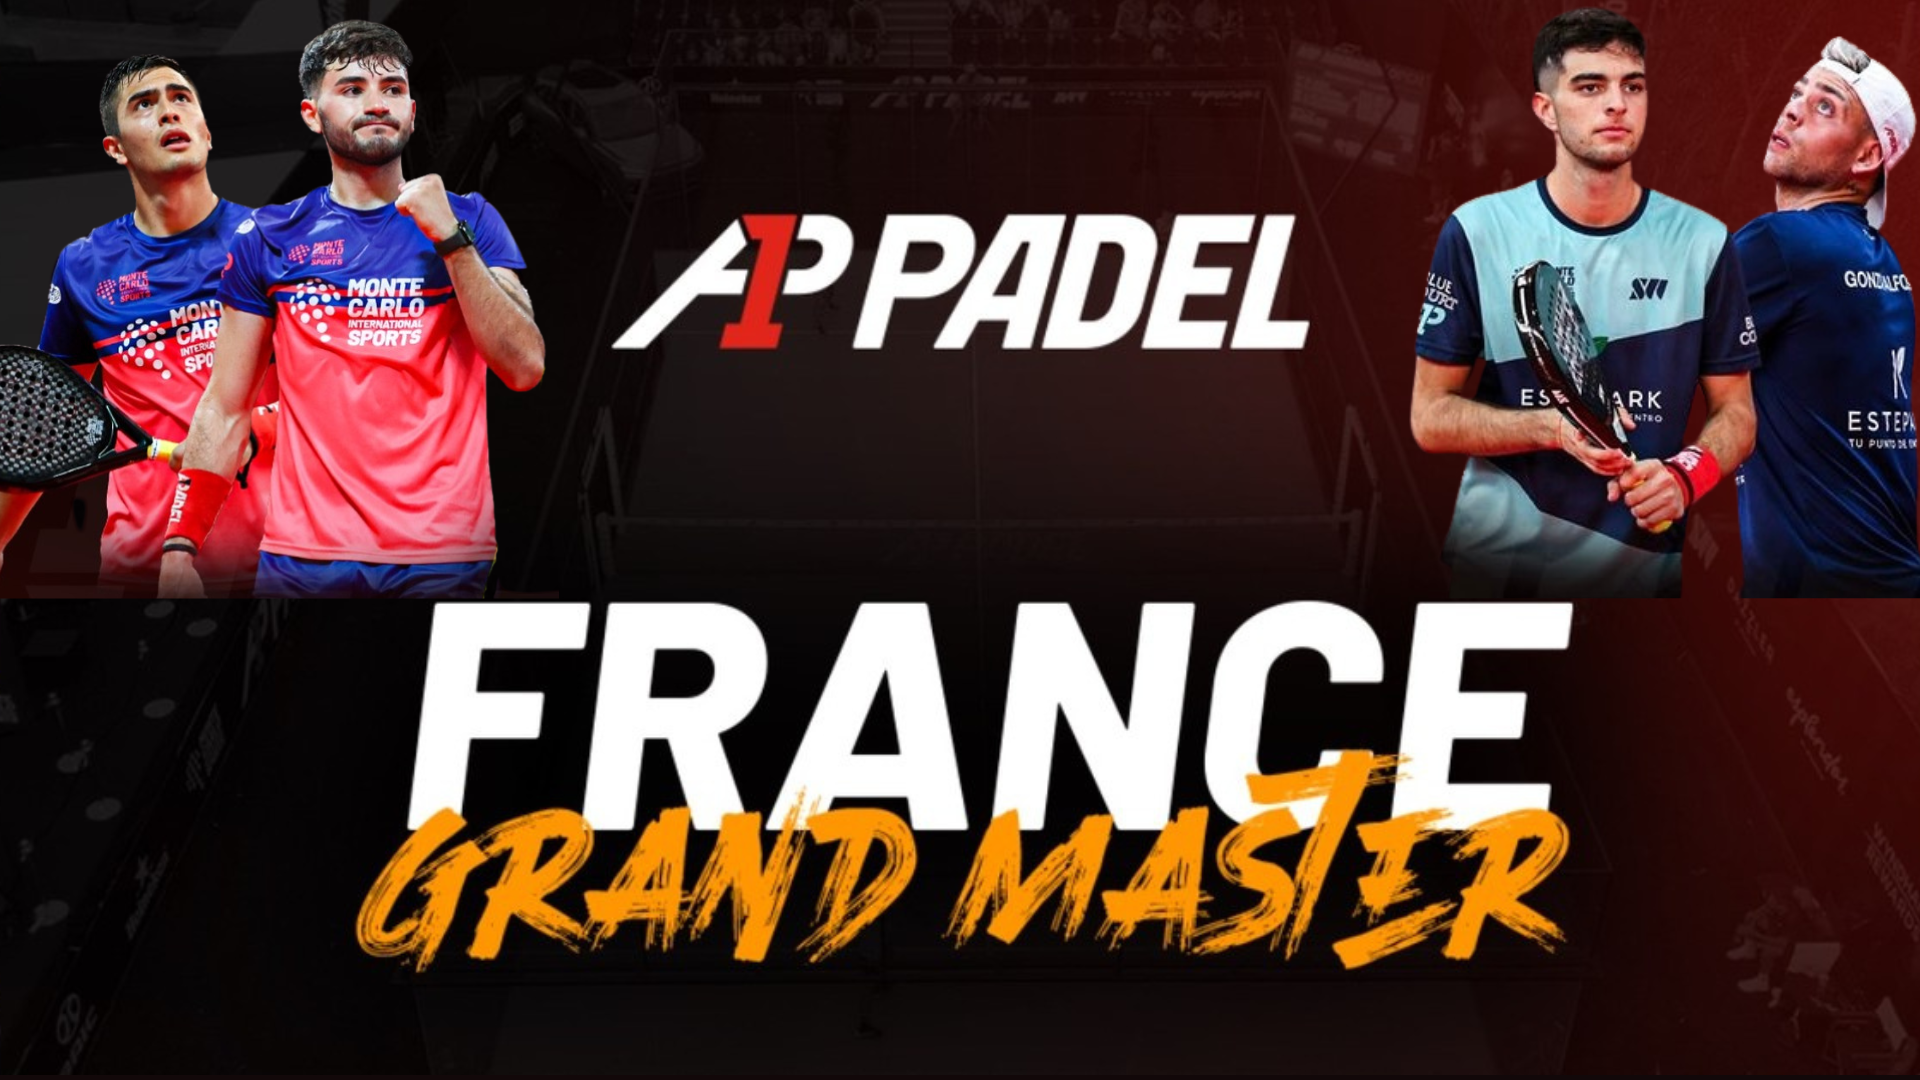 A1 Padel Gran Maestro de Francia – De Pascual/Alfonso en la final contra Dal Bianco/Arce